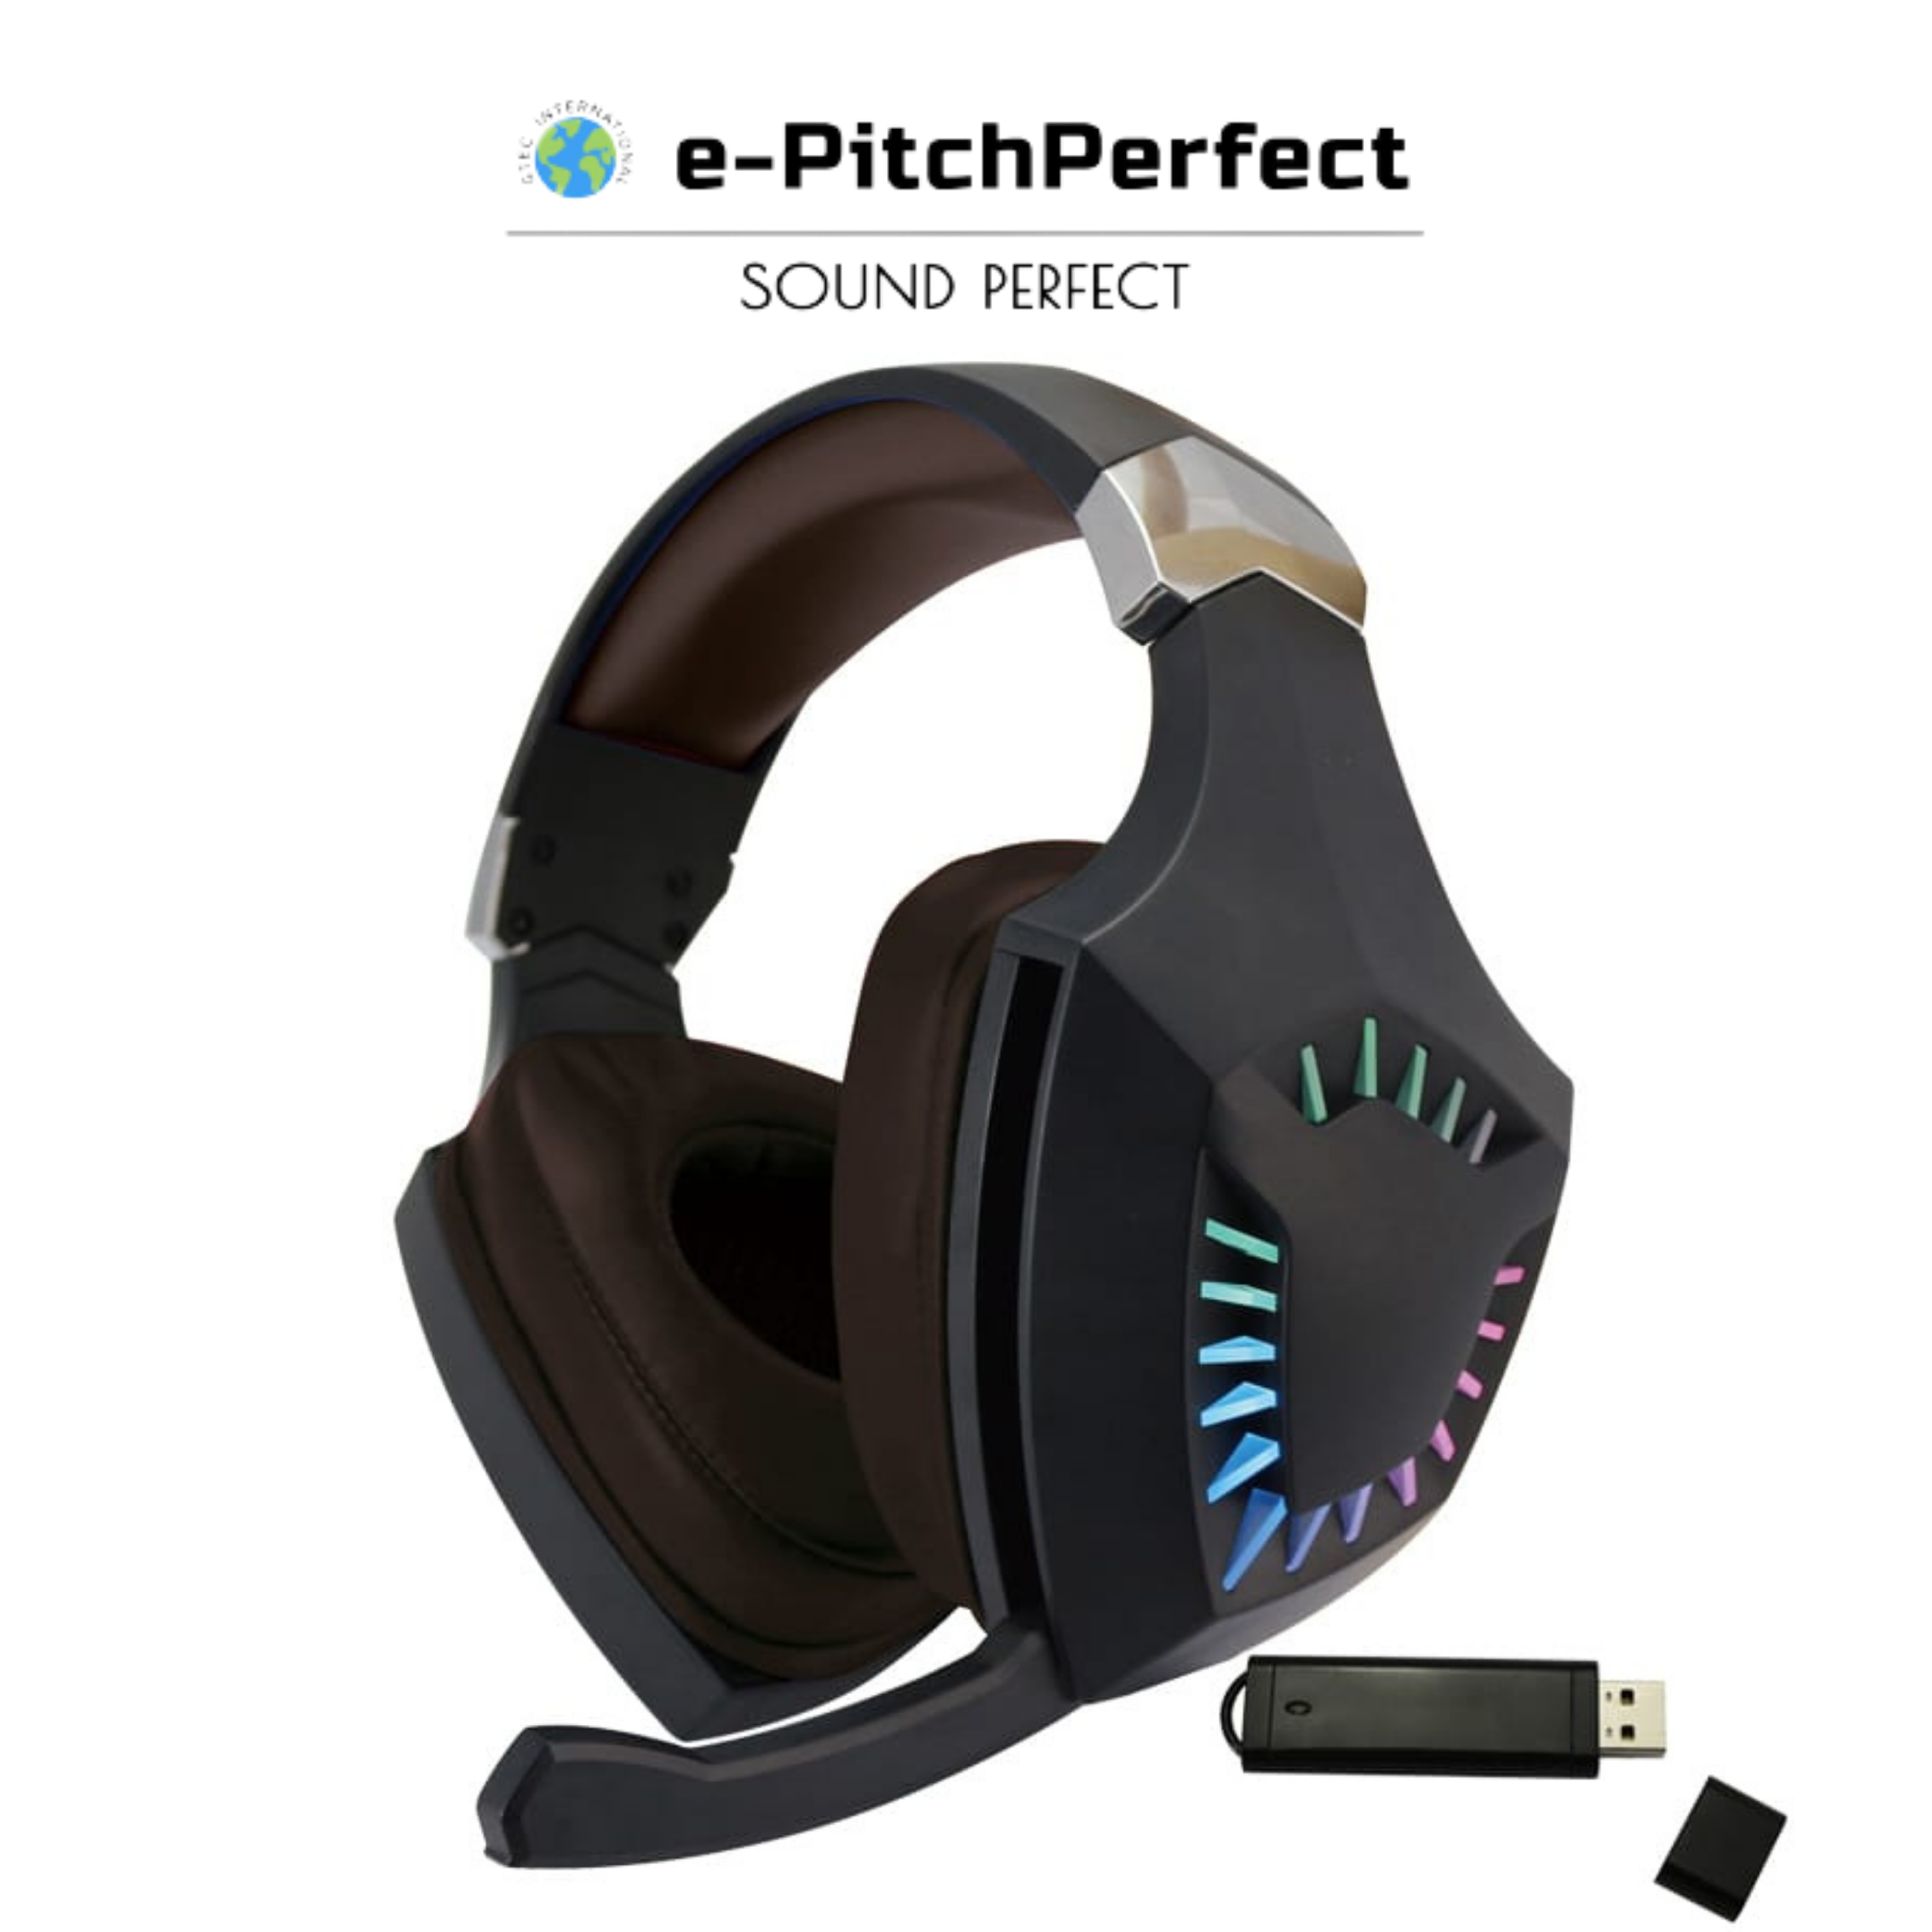 e-PitchPerfect e-PP 2.4G Auriculares inalámbricos para juegos con micrófono compatibles con PS4, Xbox One, computadora portátil, PC, iPhone y teléfonos Android